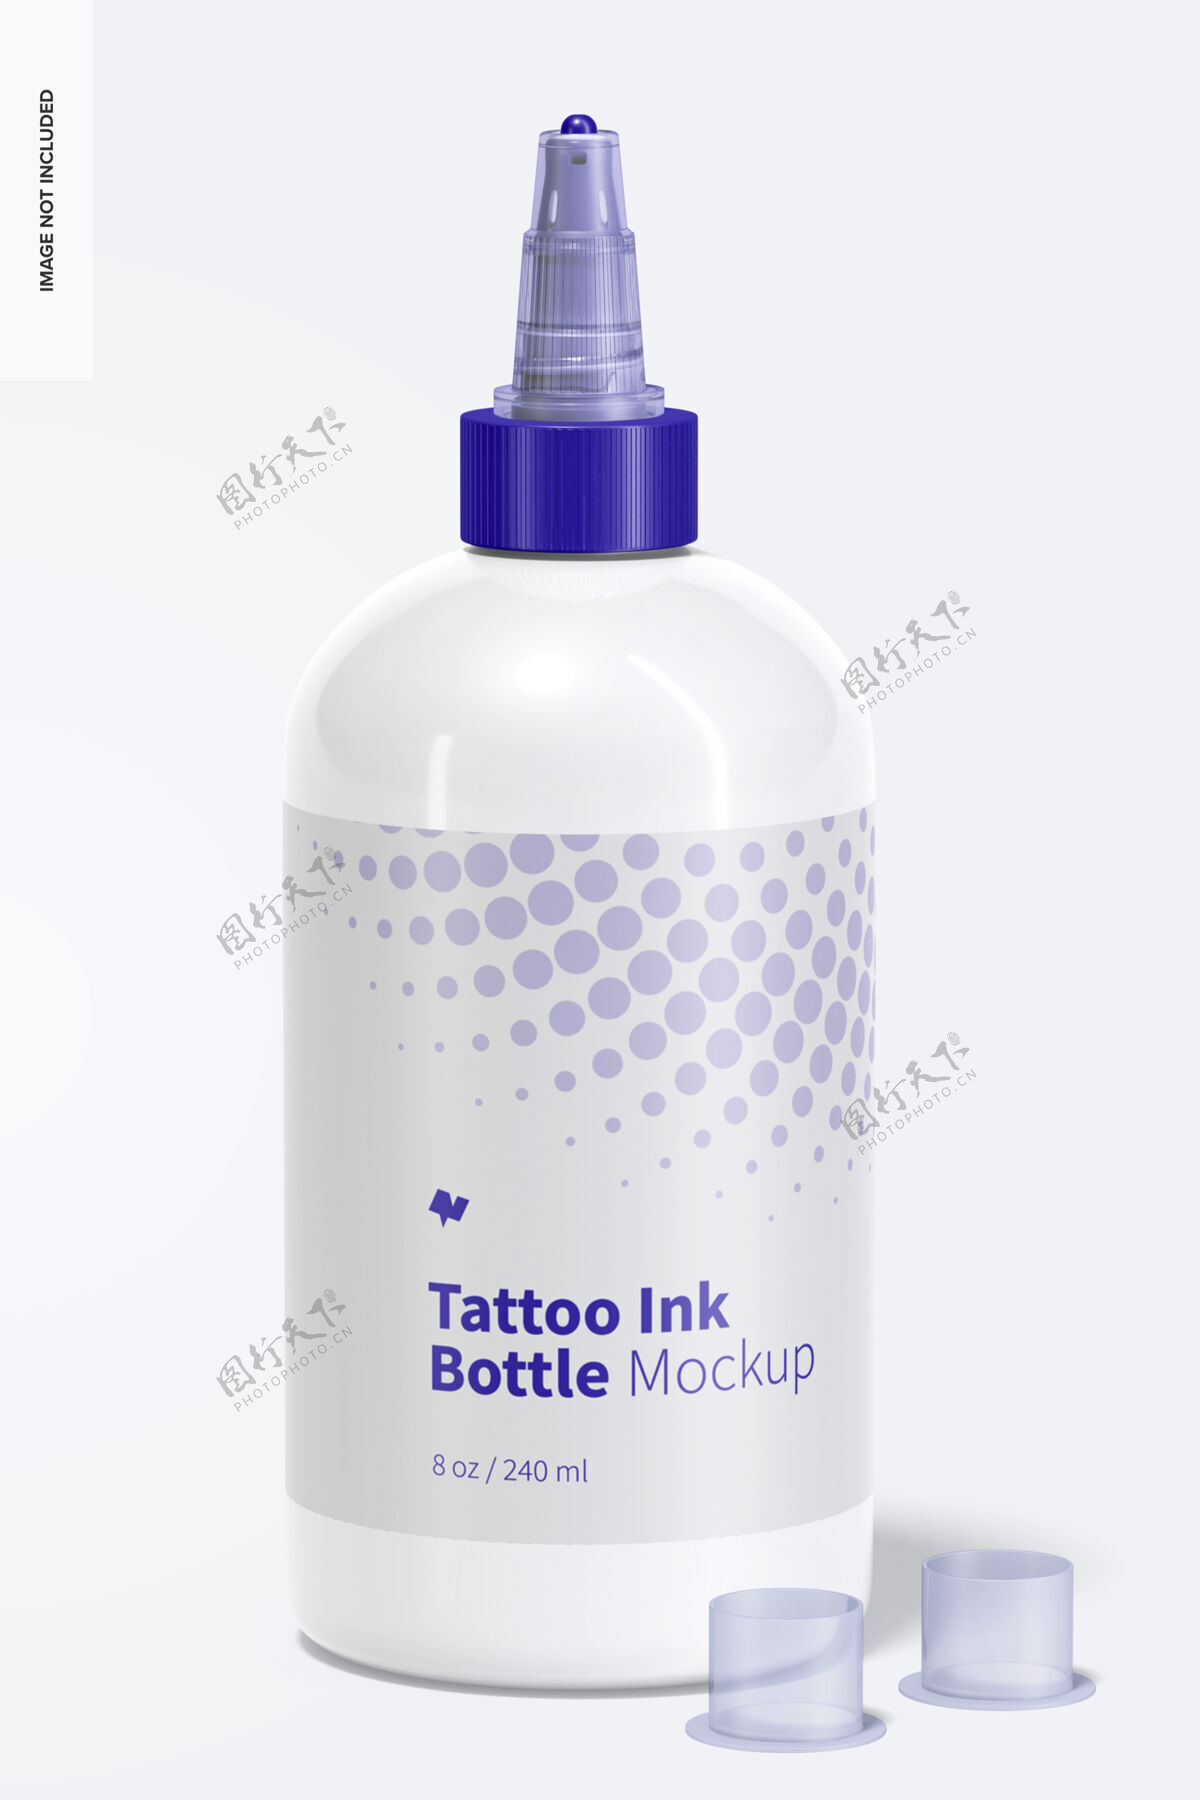 模型8盎司纹身墨水瓶模型设计塑料瓶墨水